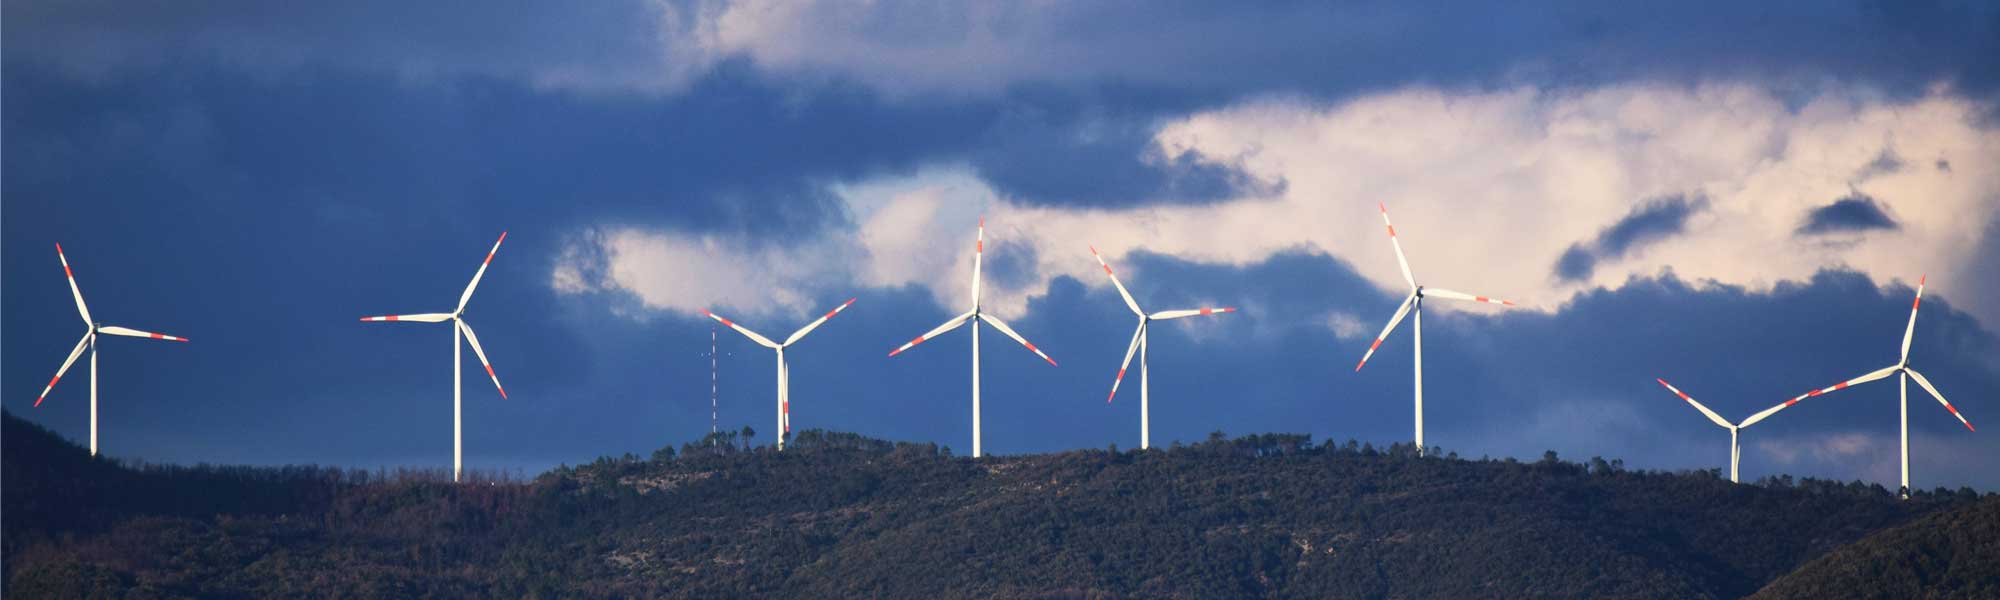 wind turbines on hill